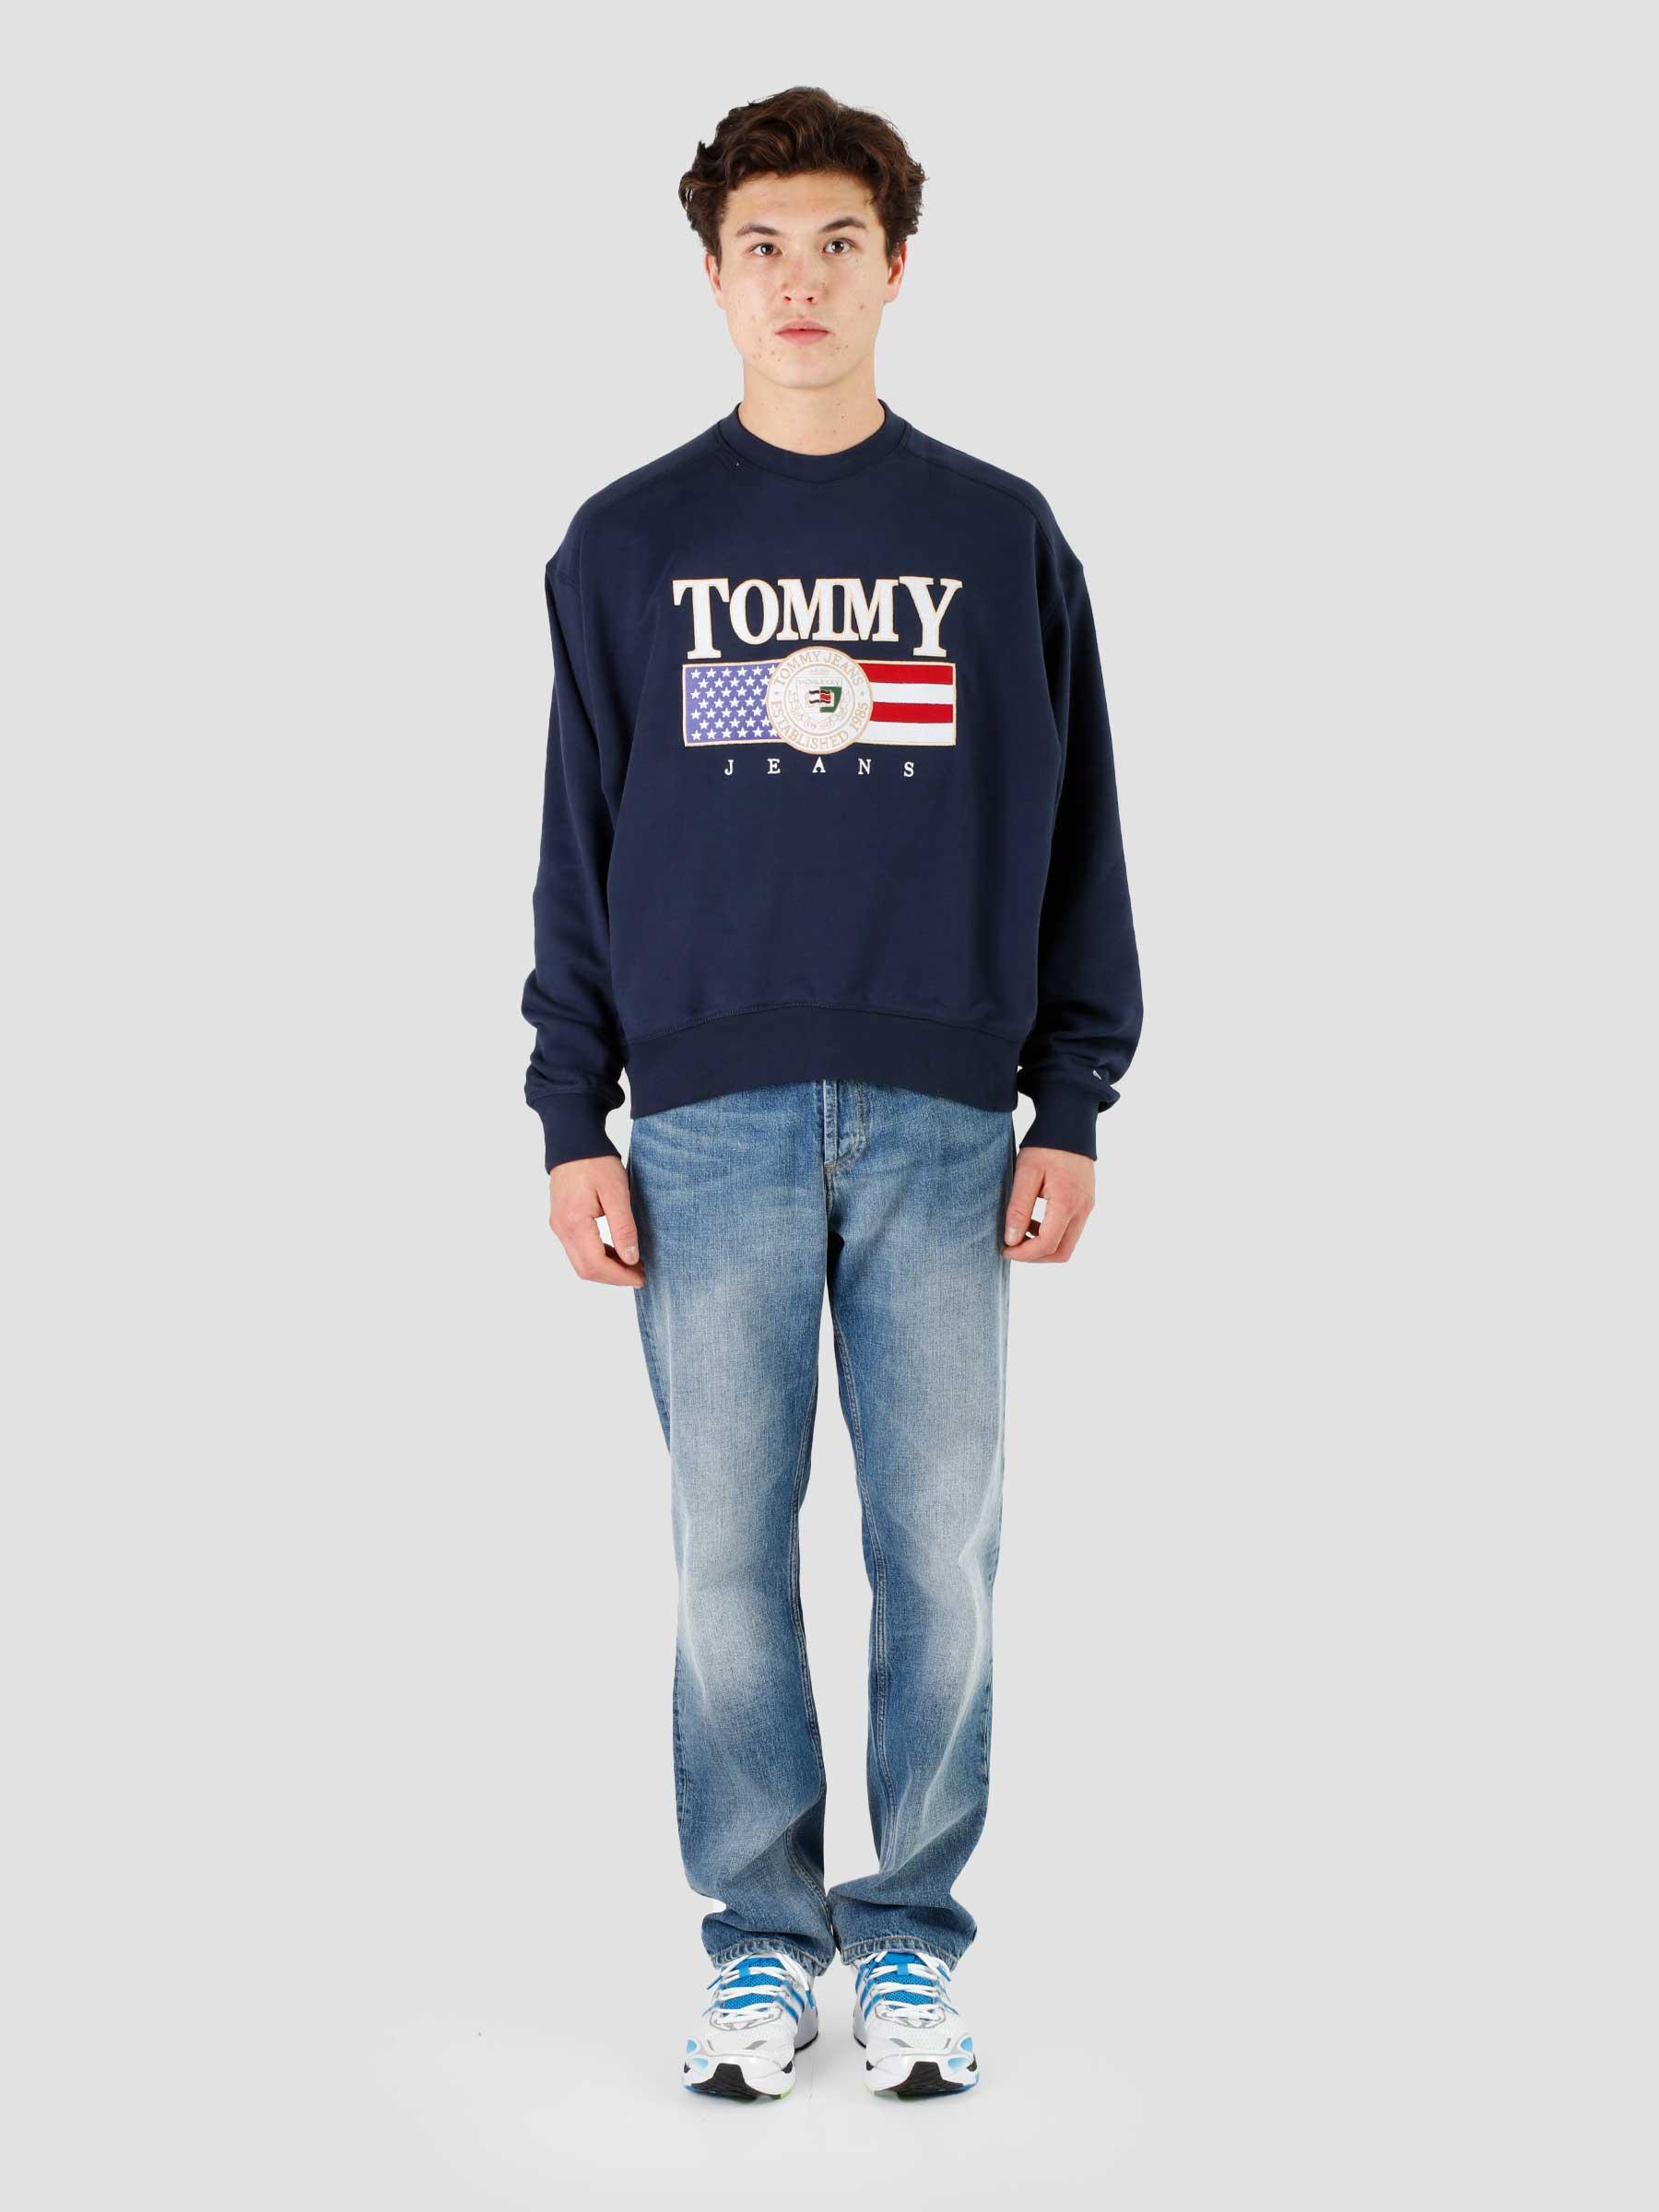 Twilight Crewneck Boxy Tommy Navy Freshcotton TJ - TJM Jeans Luxe